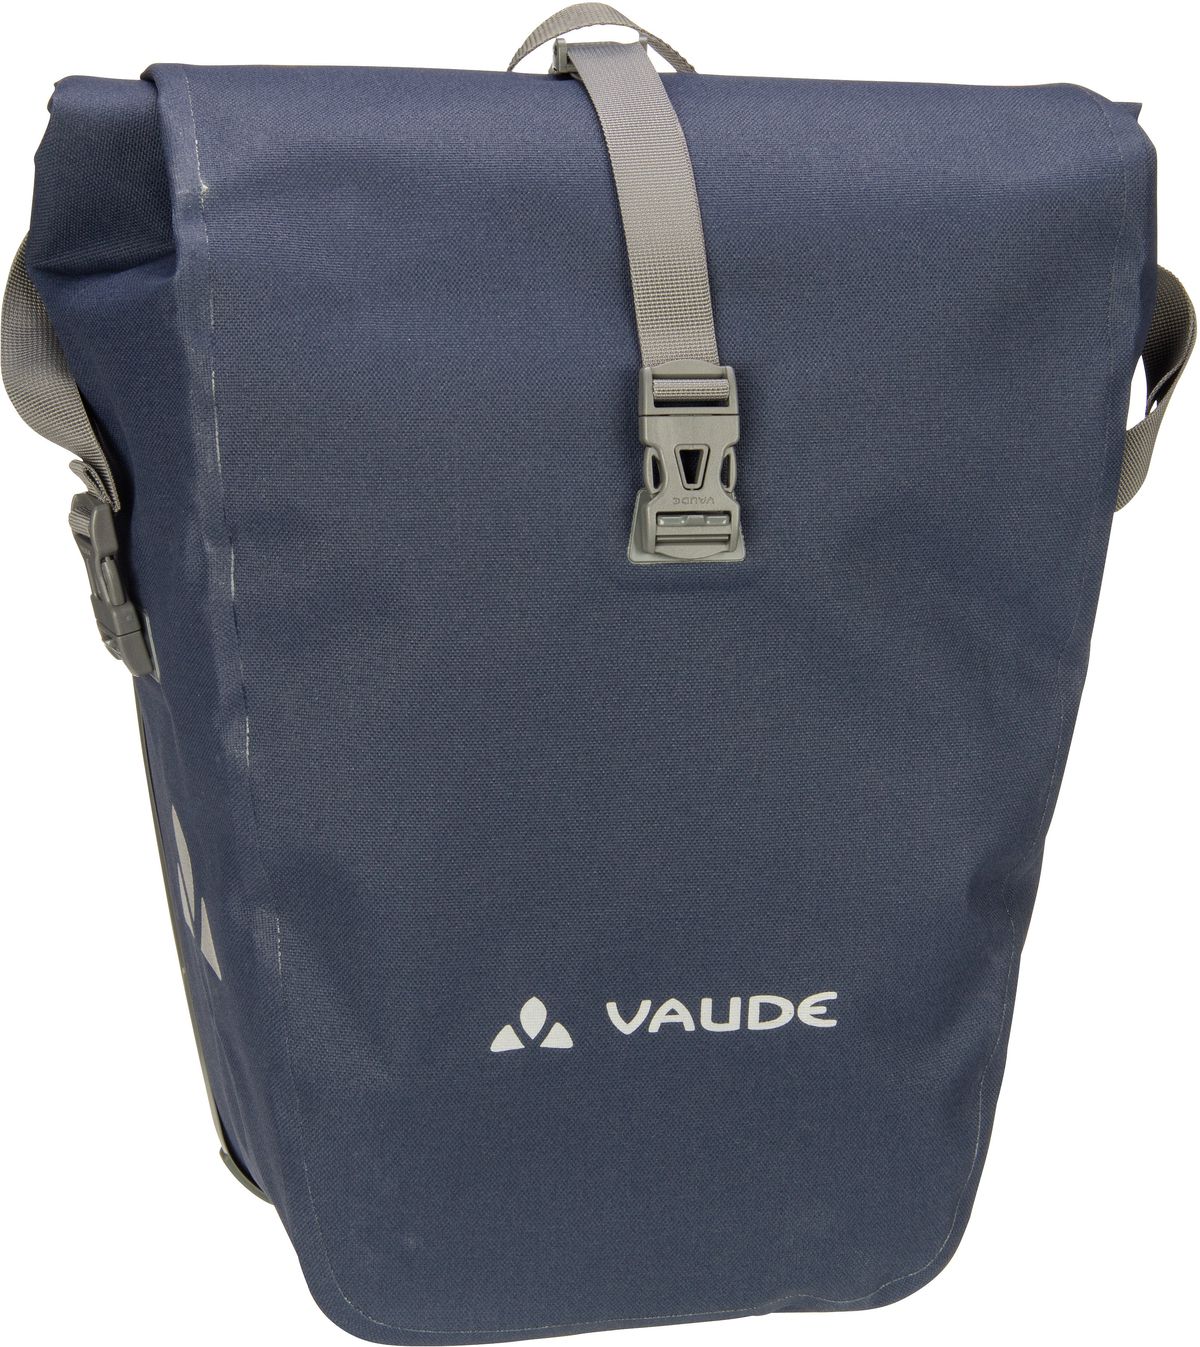 Vaude Aqua Back Deluxe  in Navy (48 Liter), Fahrradtasche von Vaude